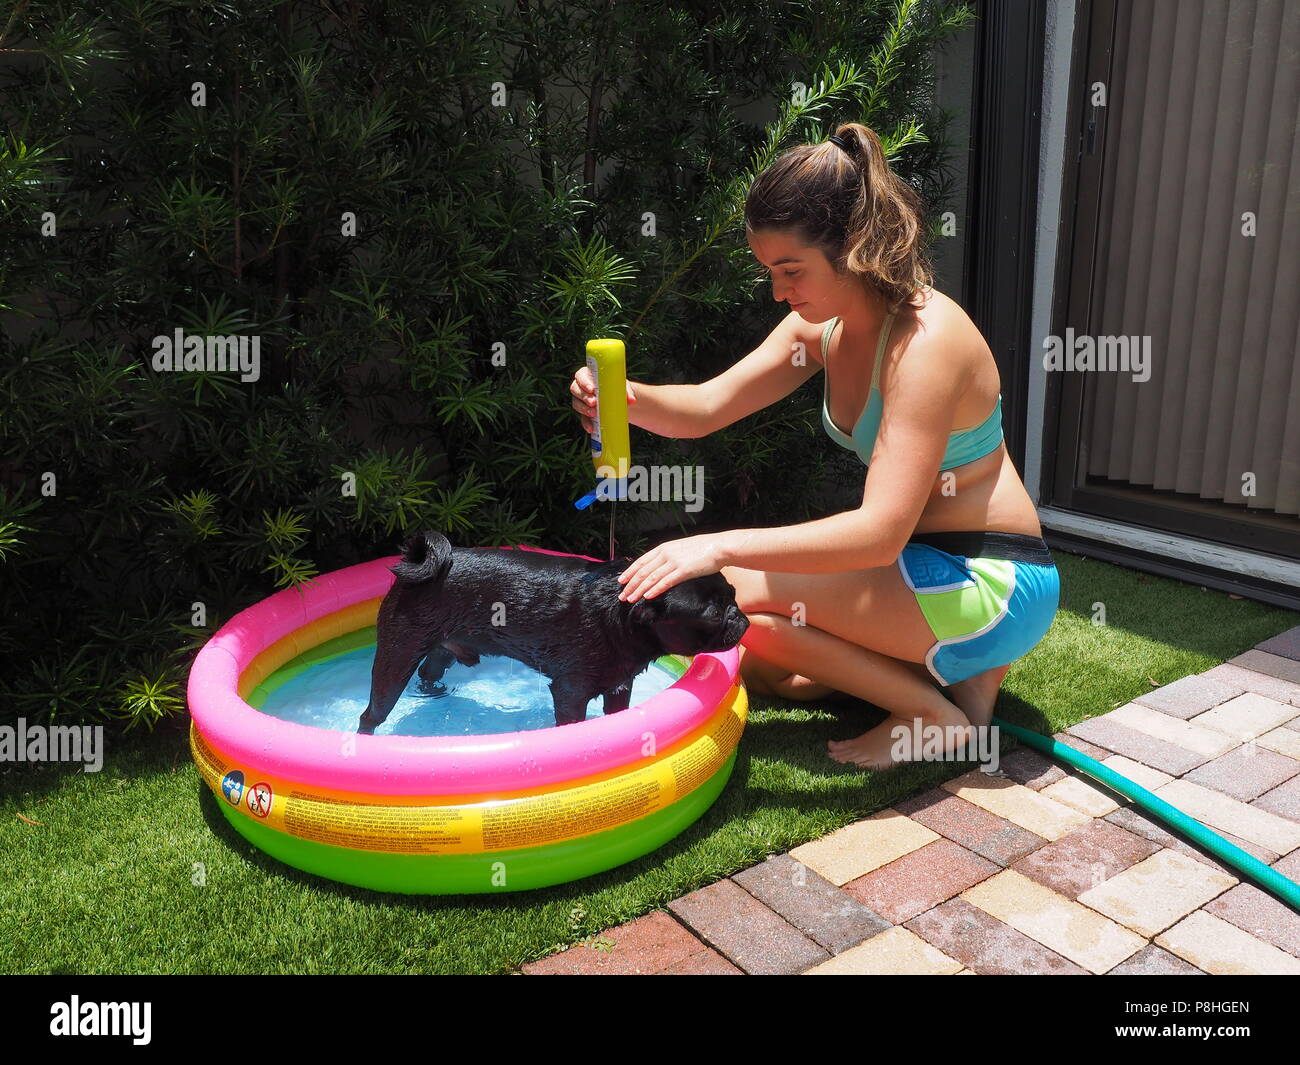 pug inflatable pool